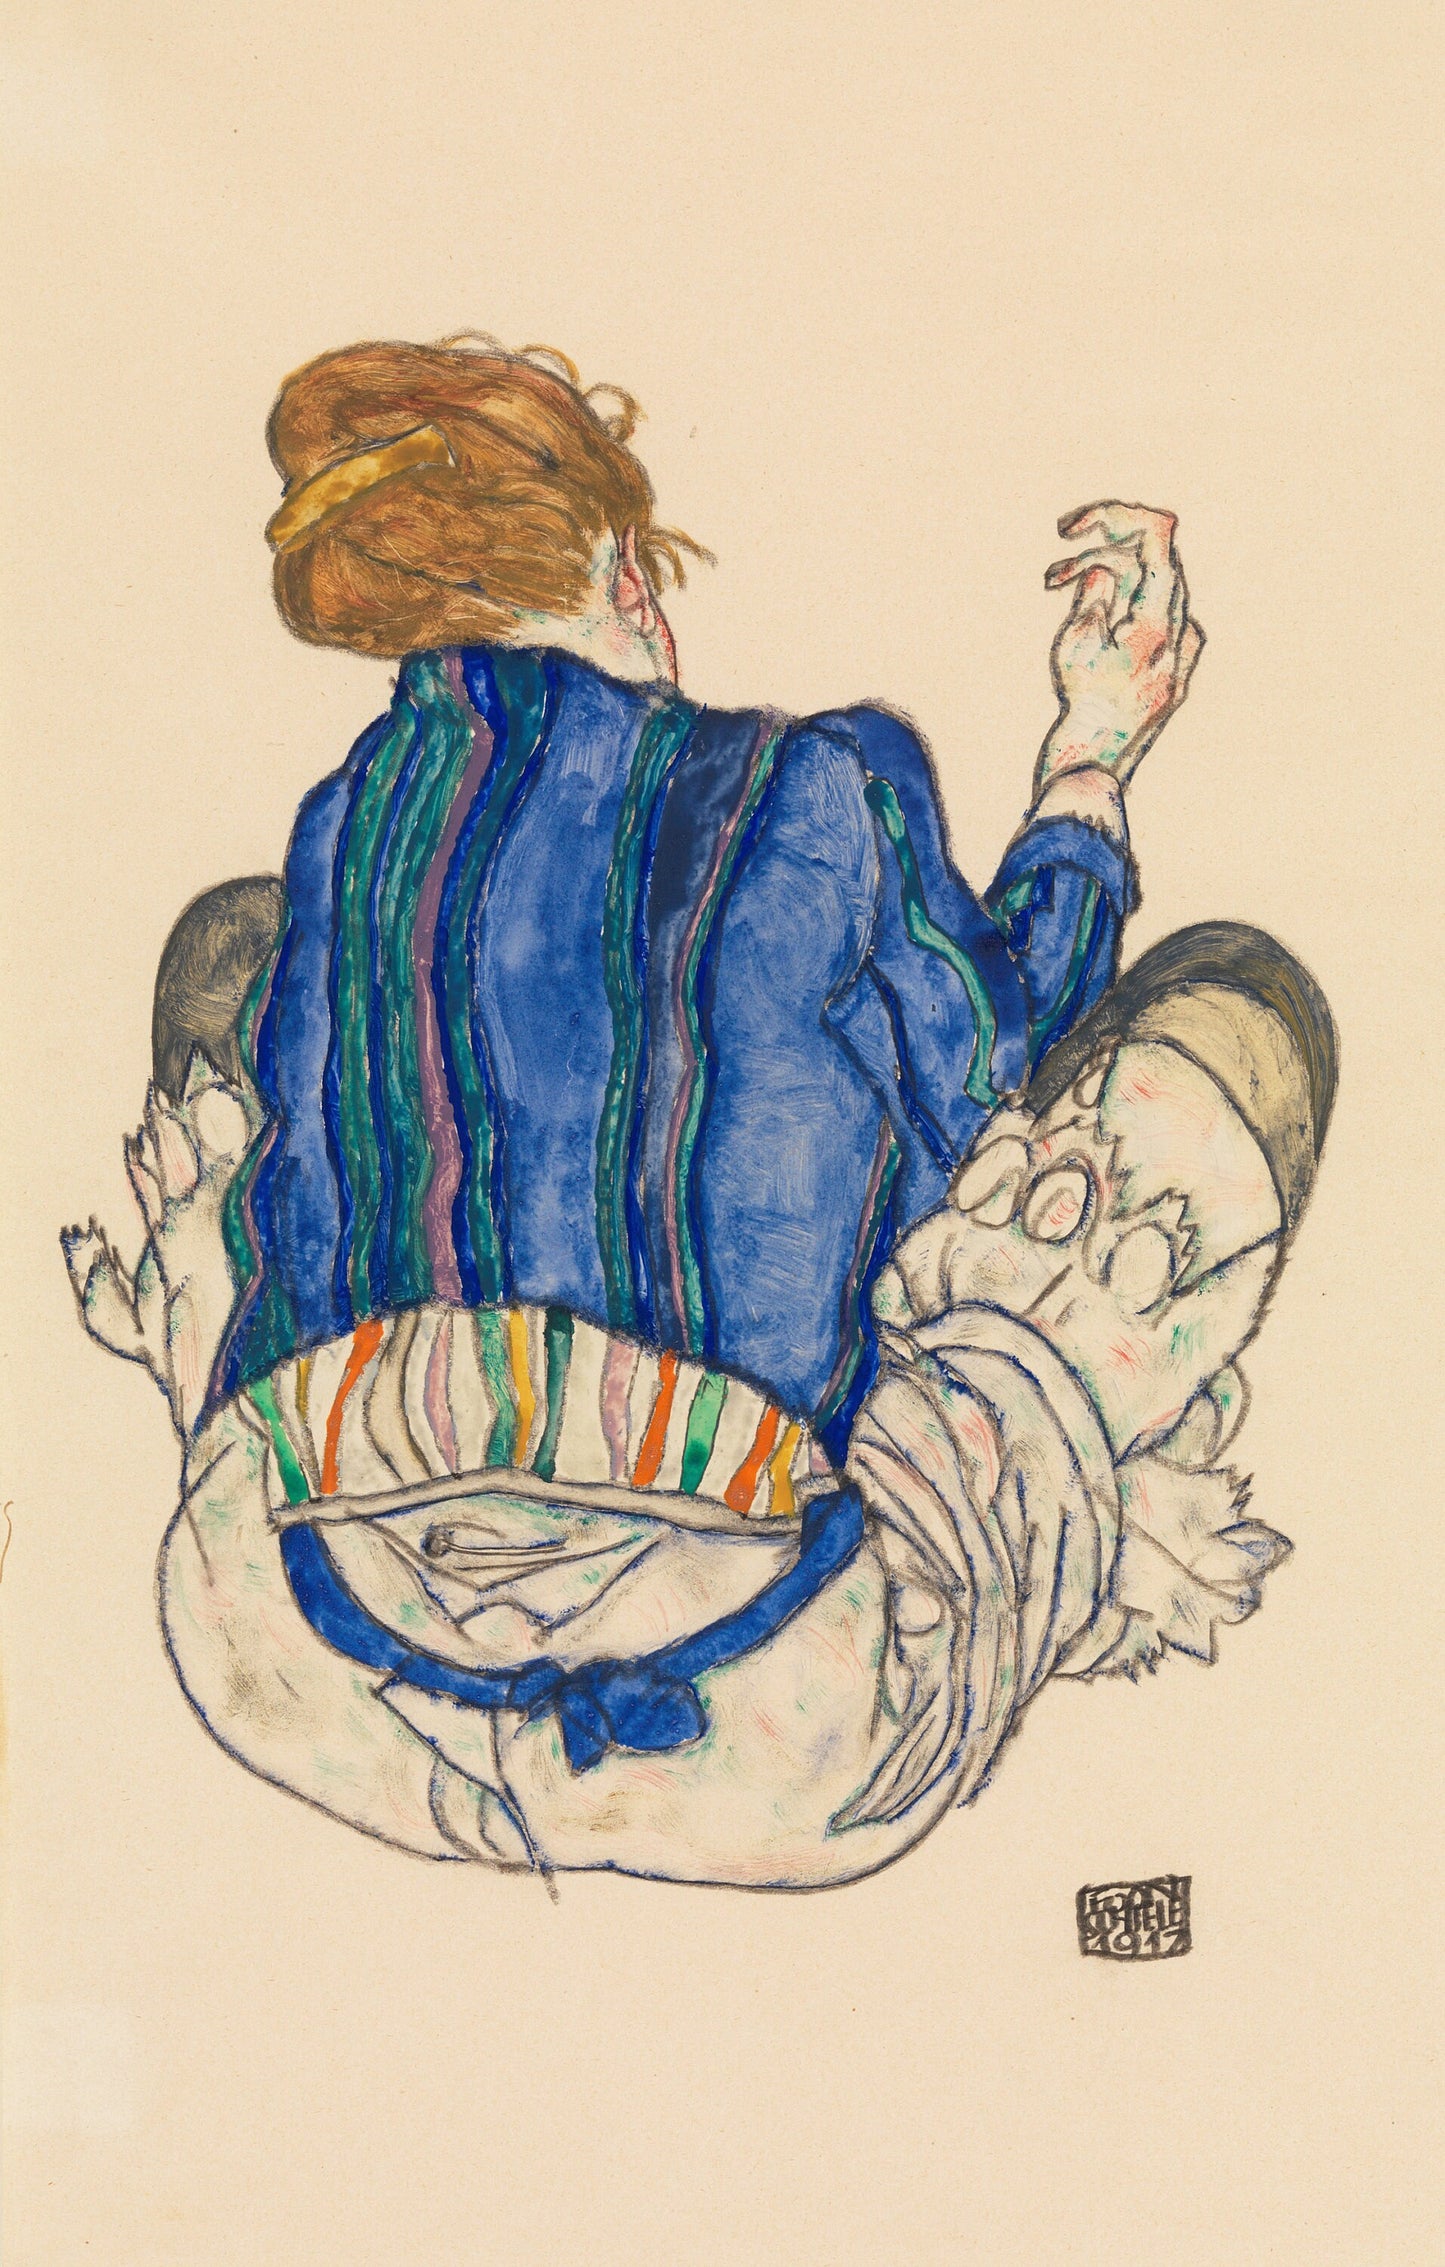 Egon Schiele Expressionist Artworks Set 3 [39 Images]